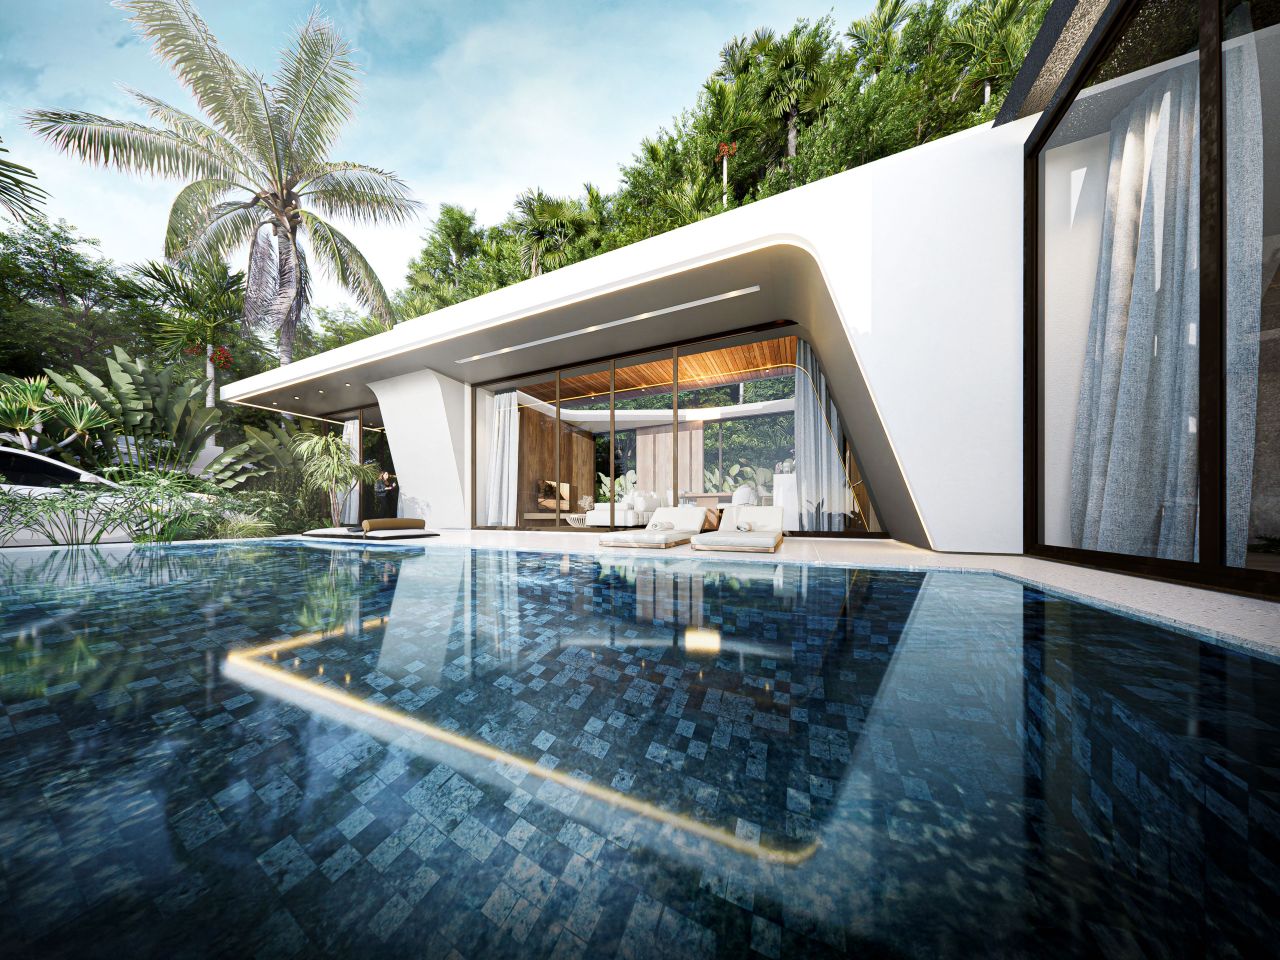 Villa in Insel Phuket, Thailand, 205 m2 - Foto 1